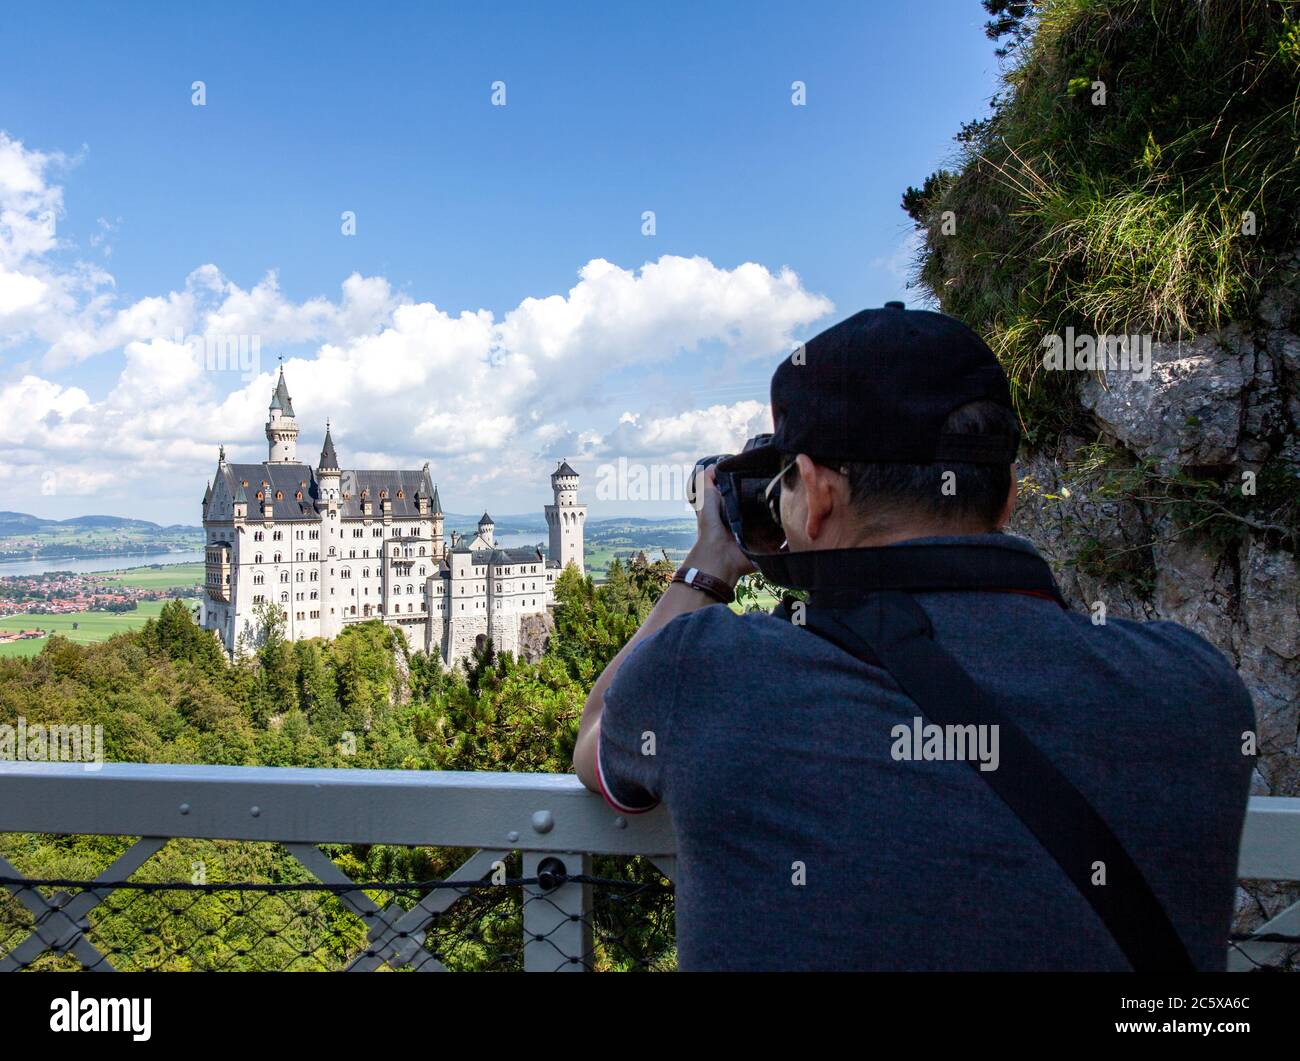 Un touriste veut son objectif au château de Neuschwanstein. Ce palais roman du XIXe siècle se trouve sur une colline escarpée au-dessus du village de Hohenschwa Banque D'Images